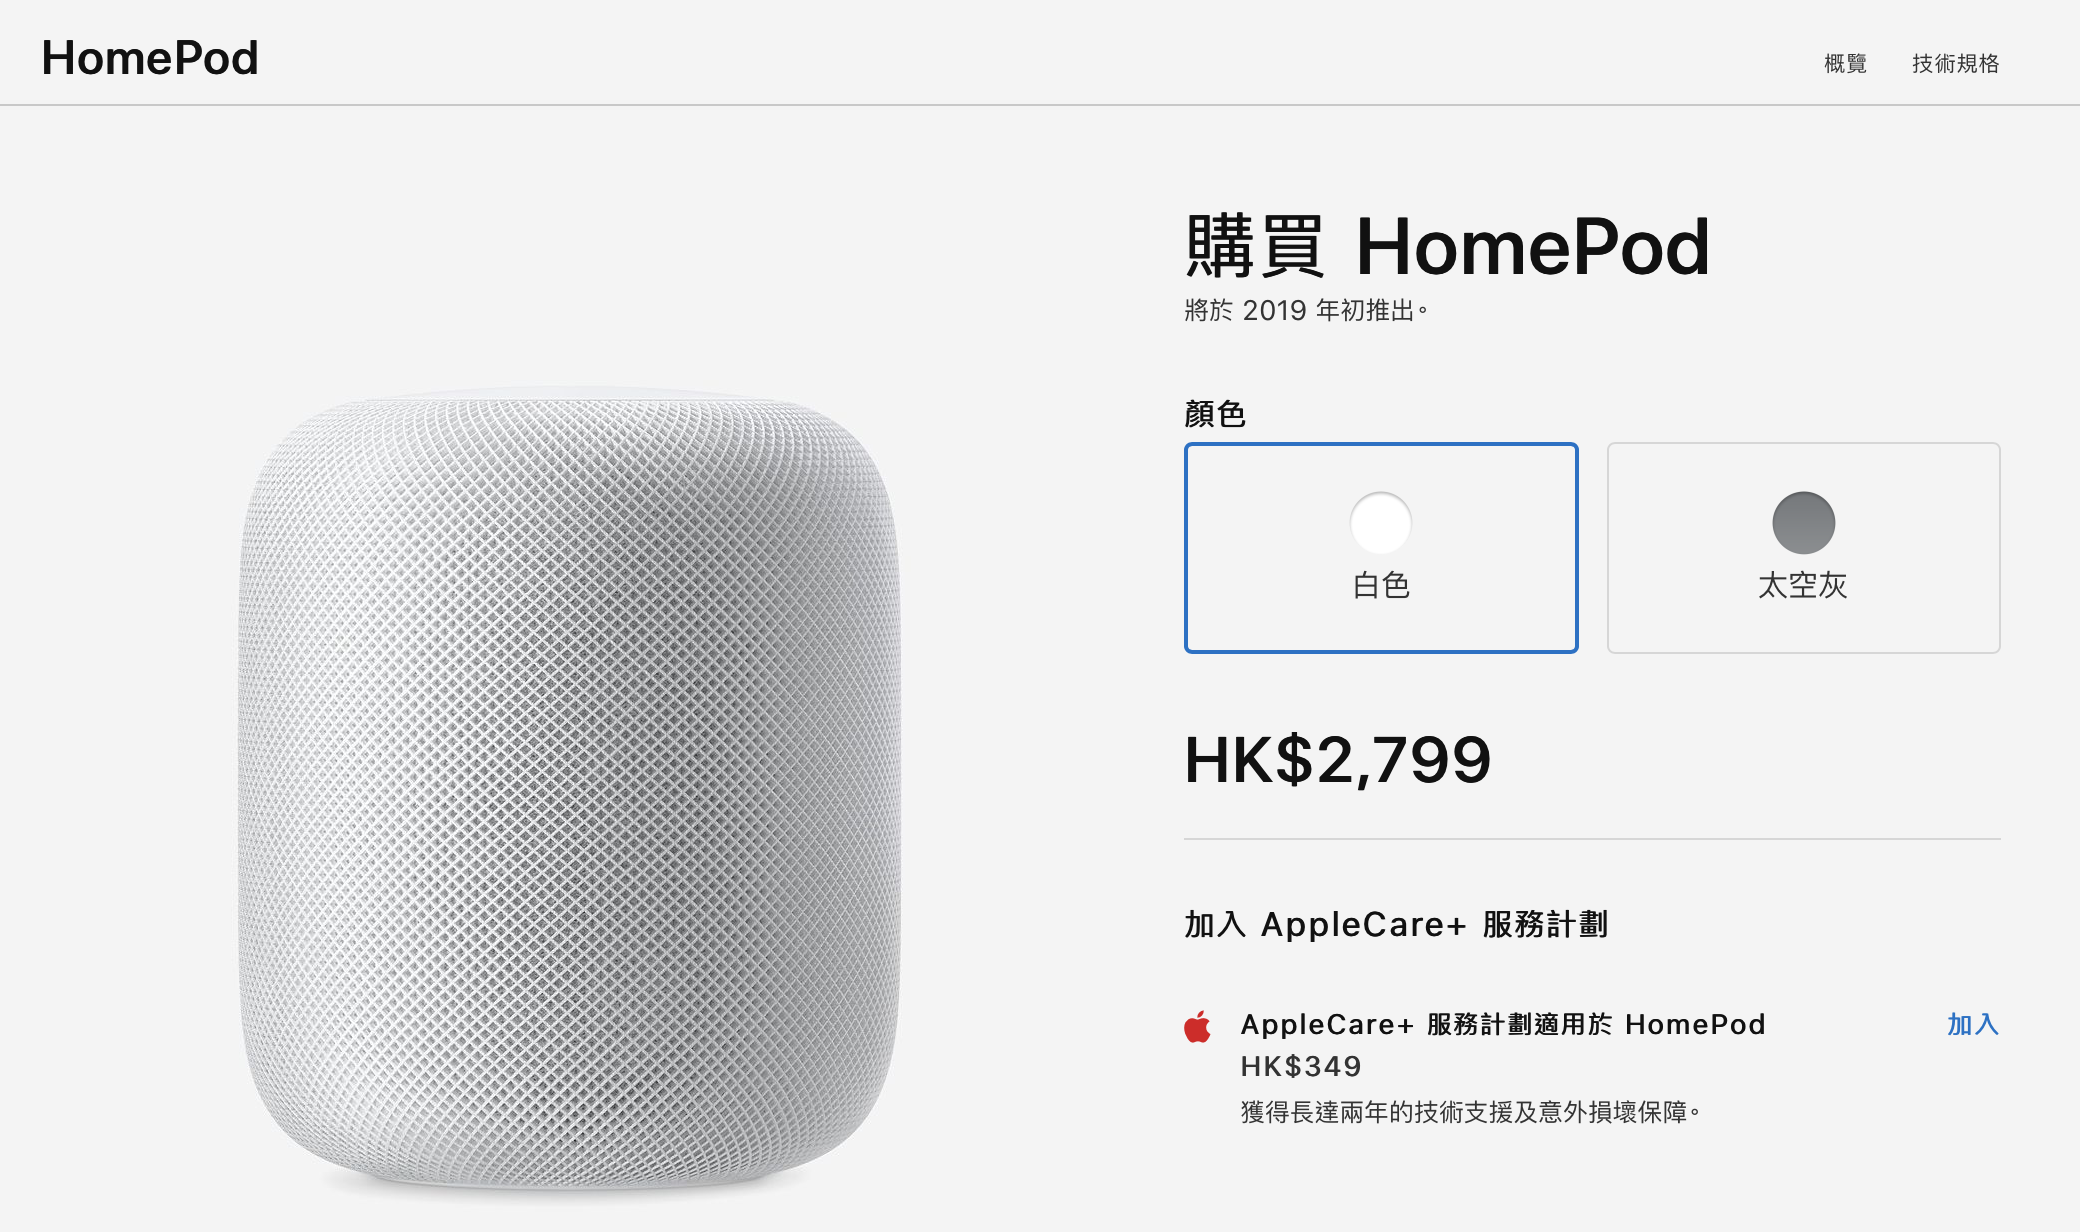 HomePod 將於中國及香港開賣